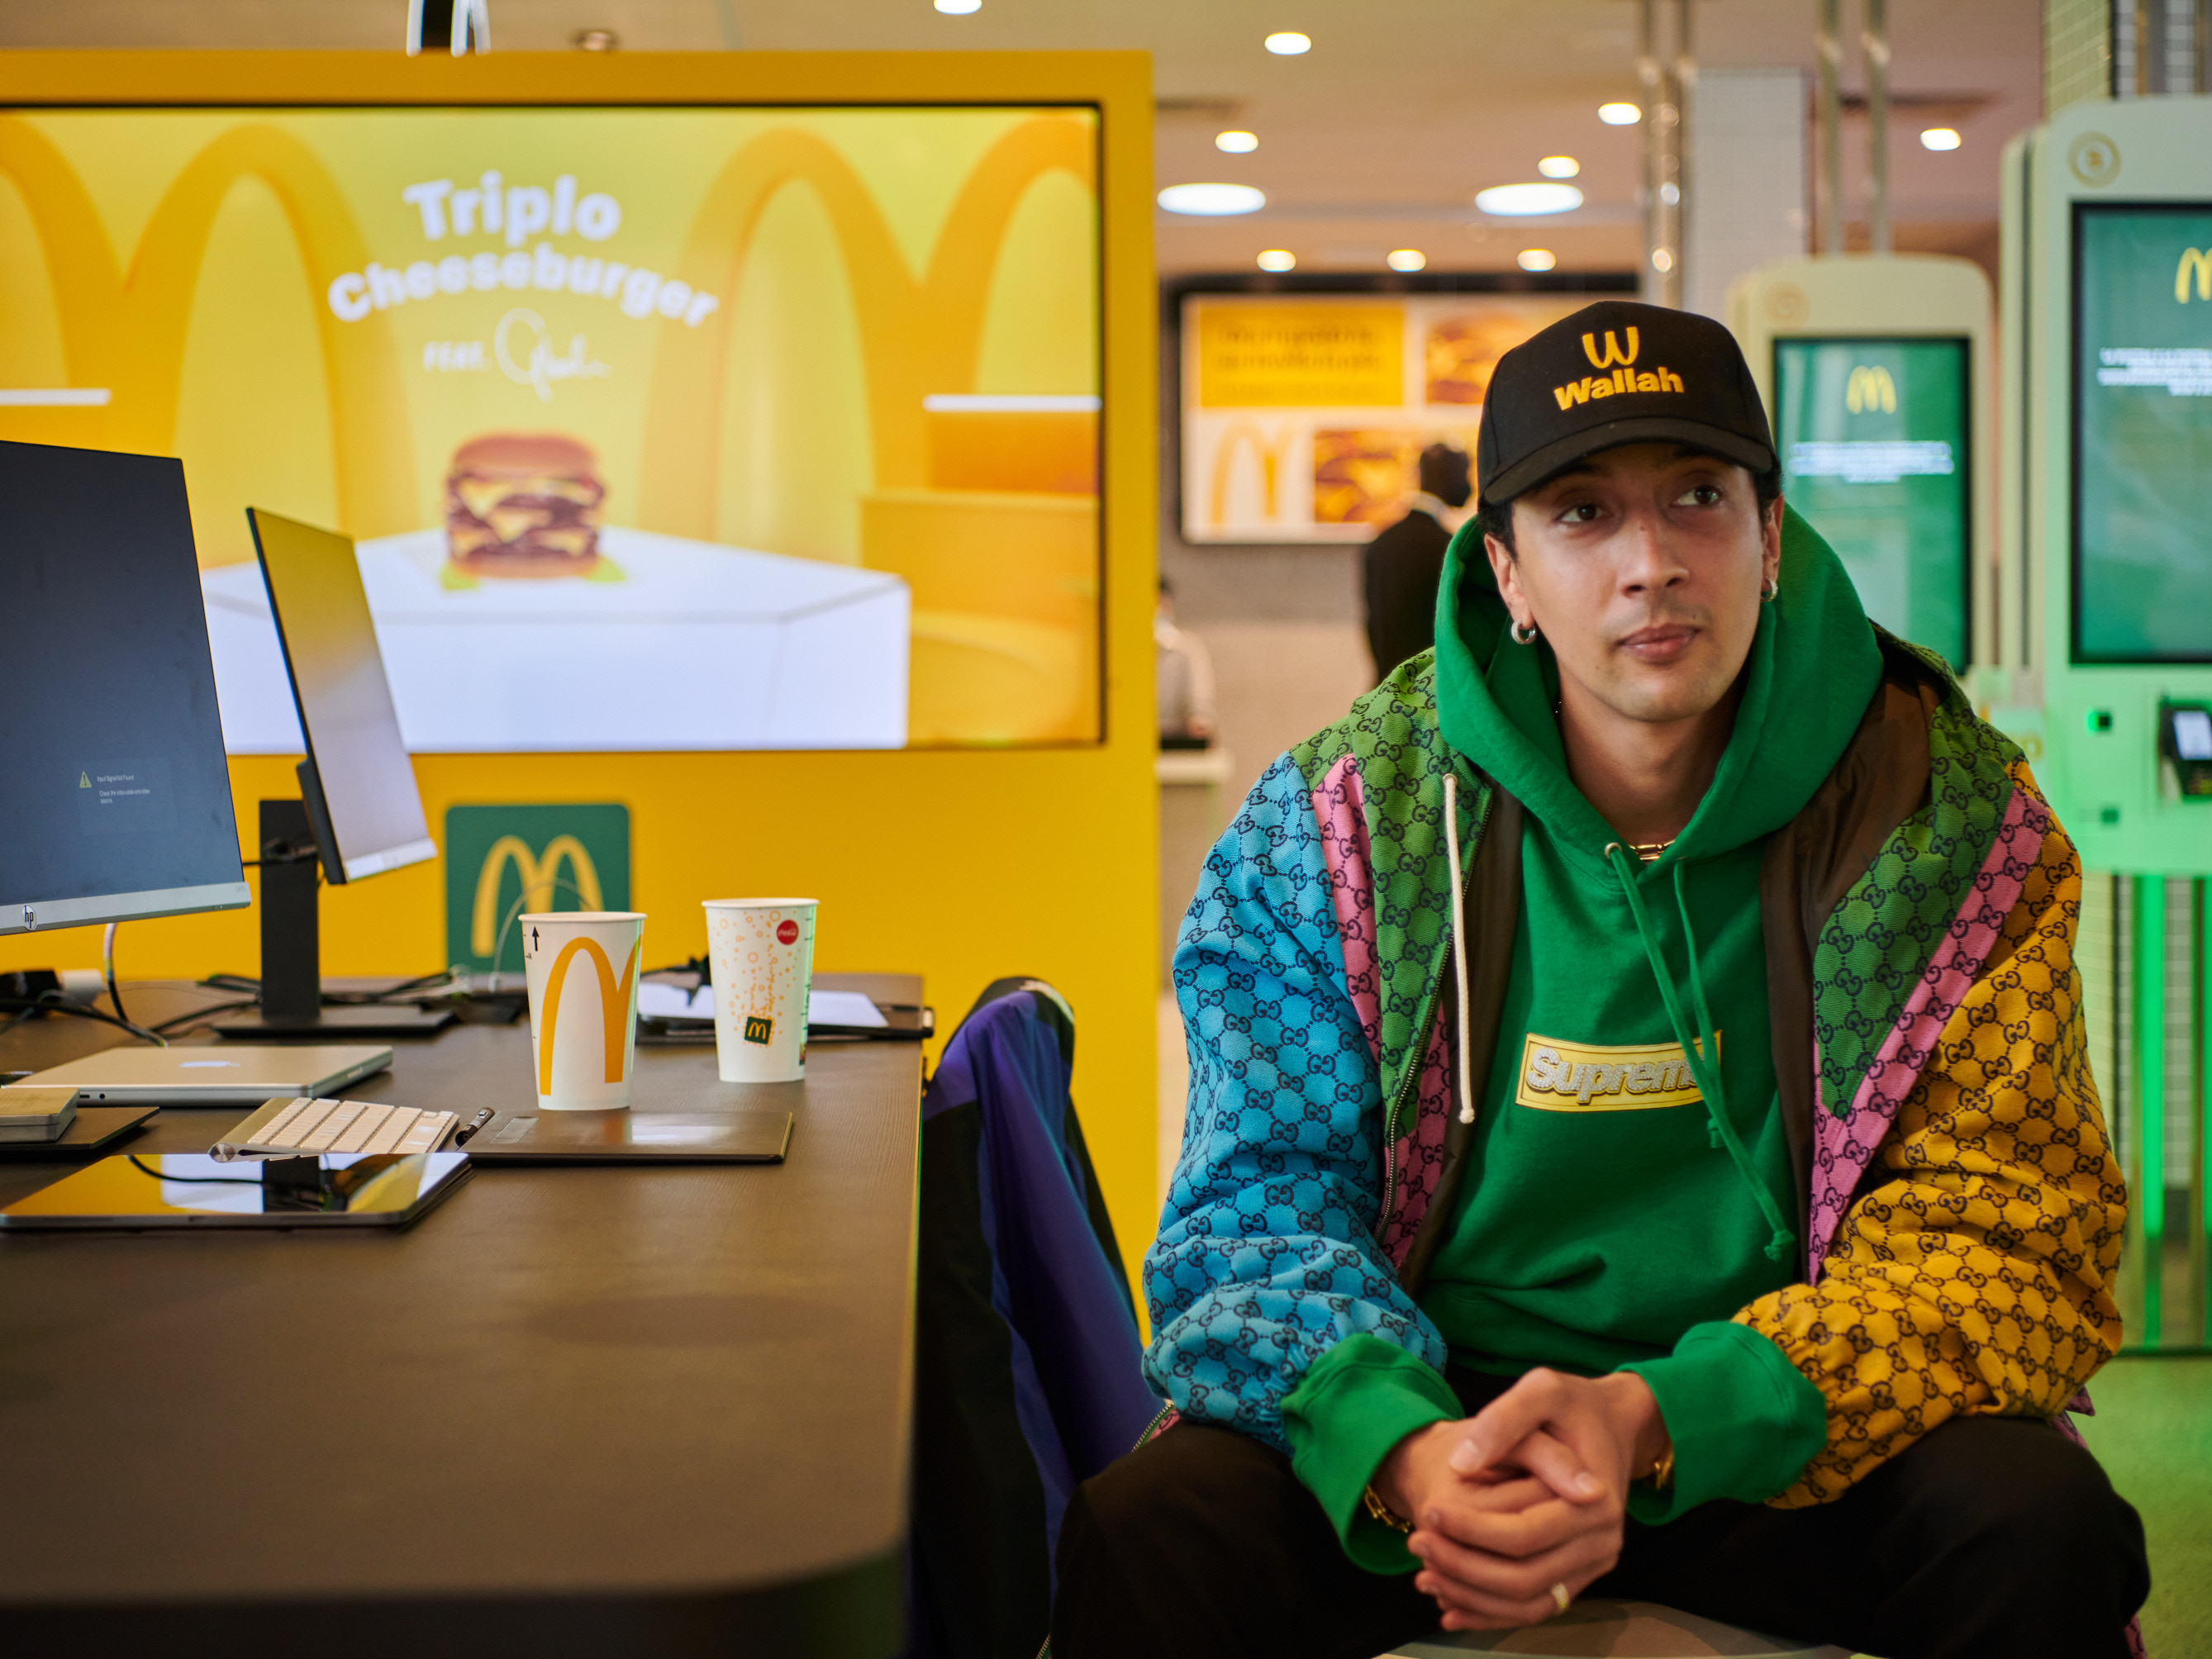 McDonald’s entra nel mondo NFT con tre opere di giovani artisti italiani